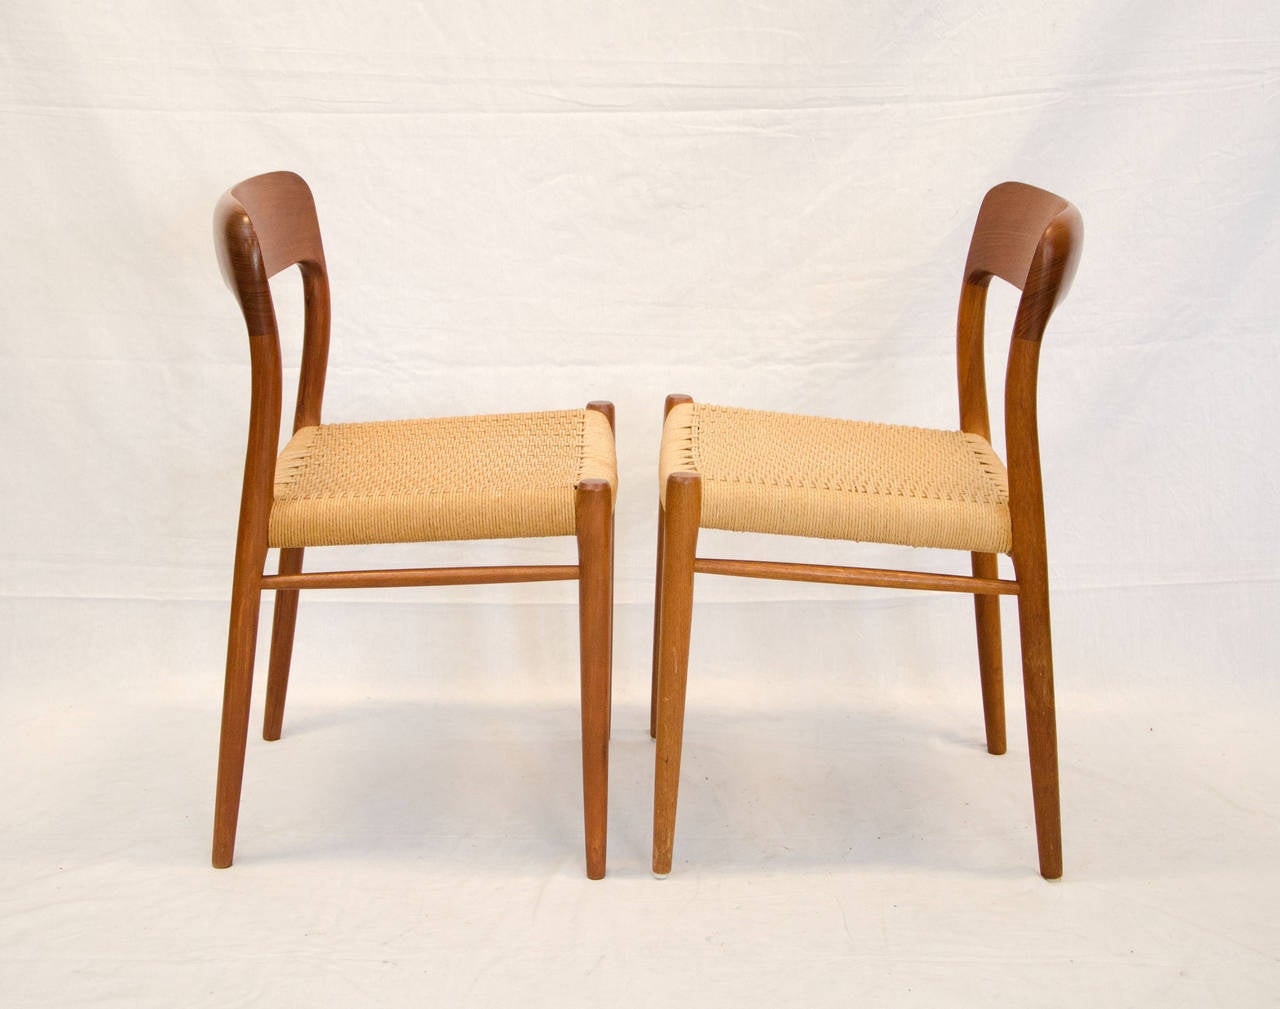 Scandinavian Modern Four Danish Teak Dining Chairs, Niels Moller #75